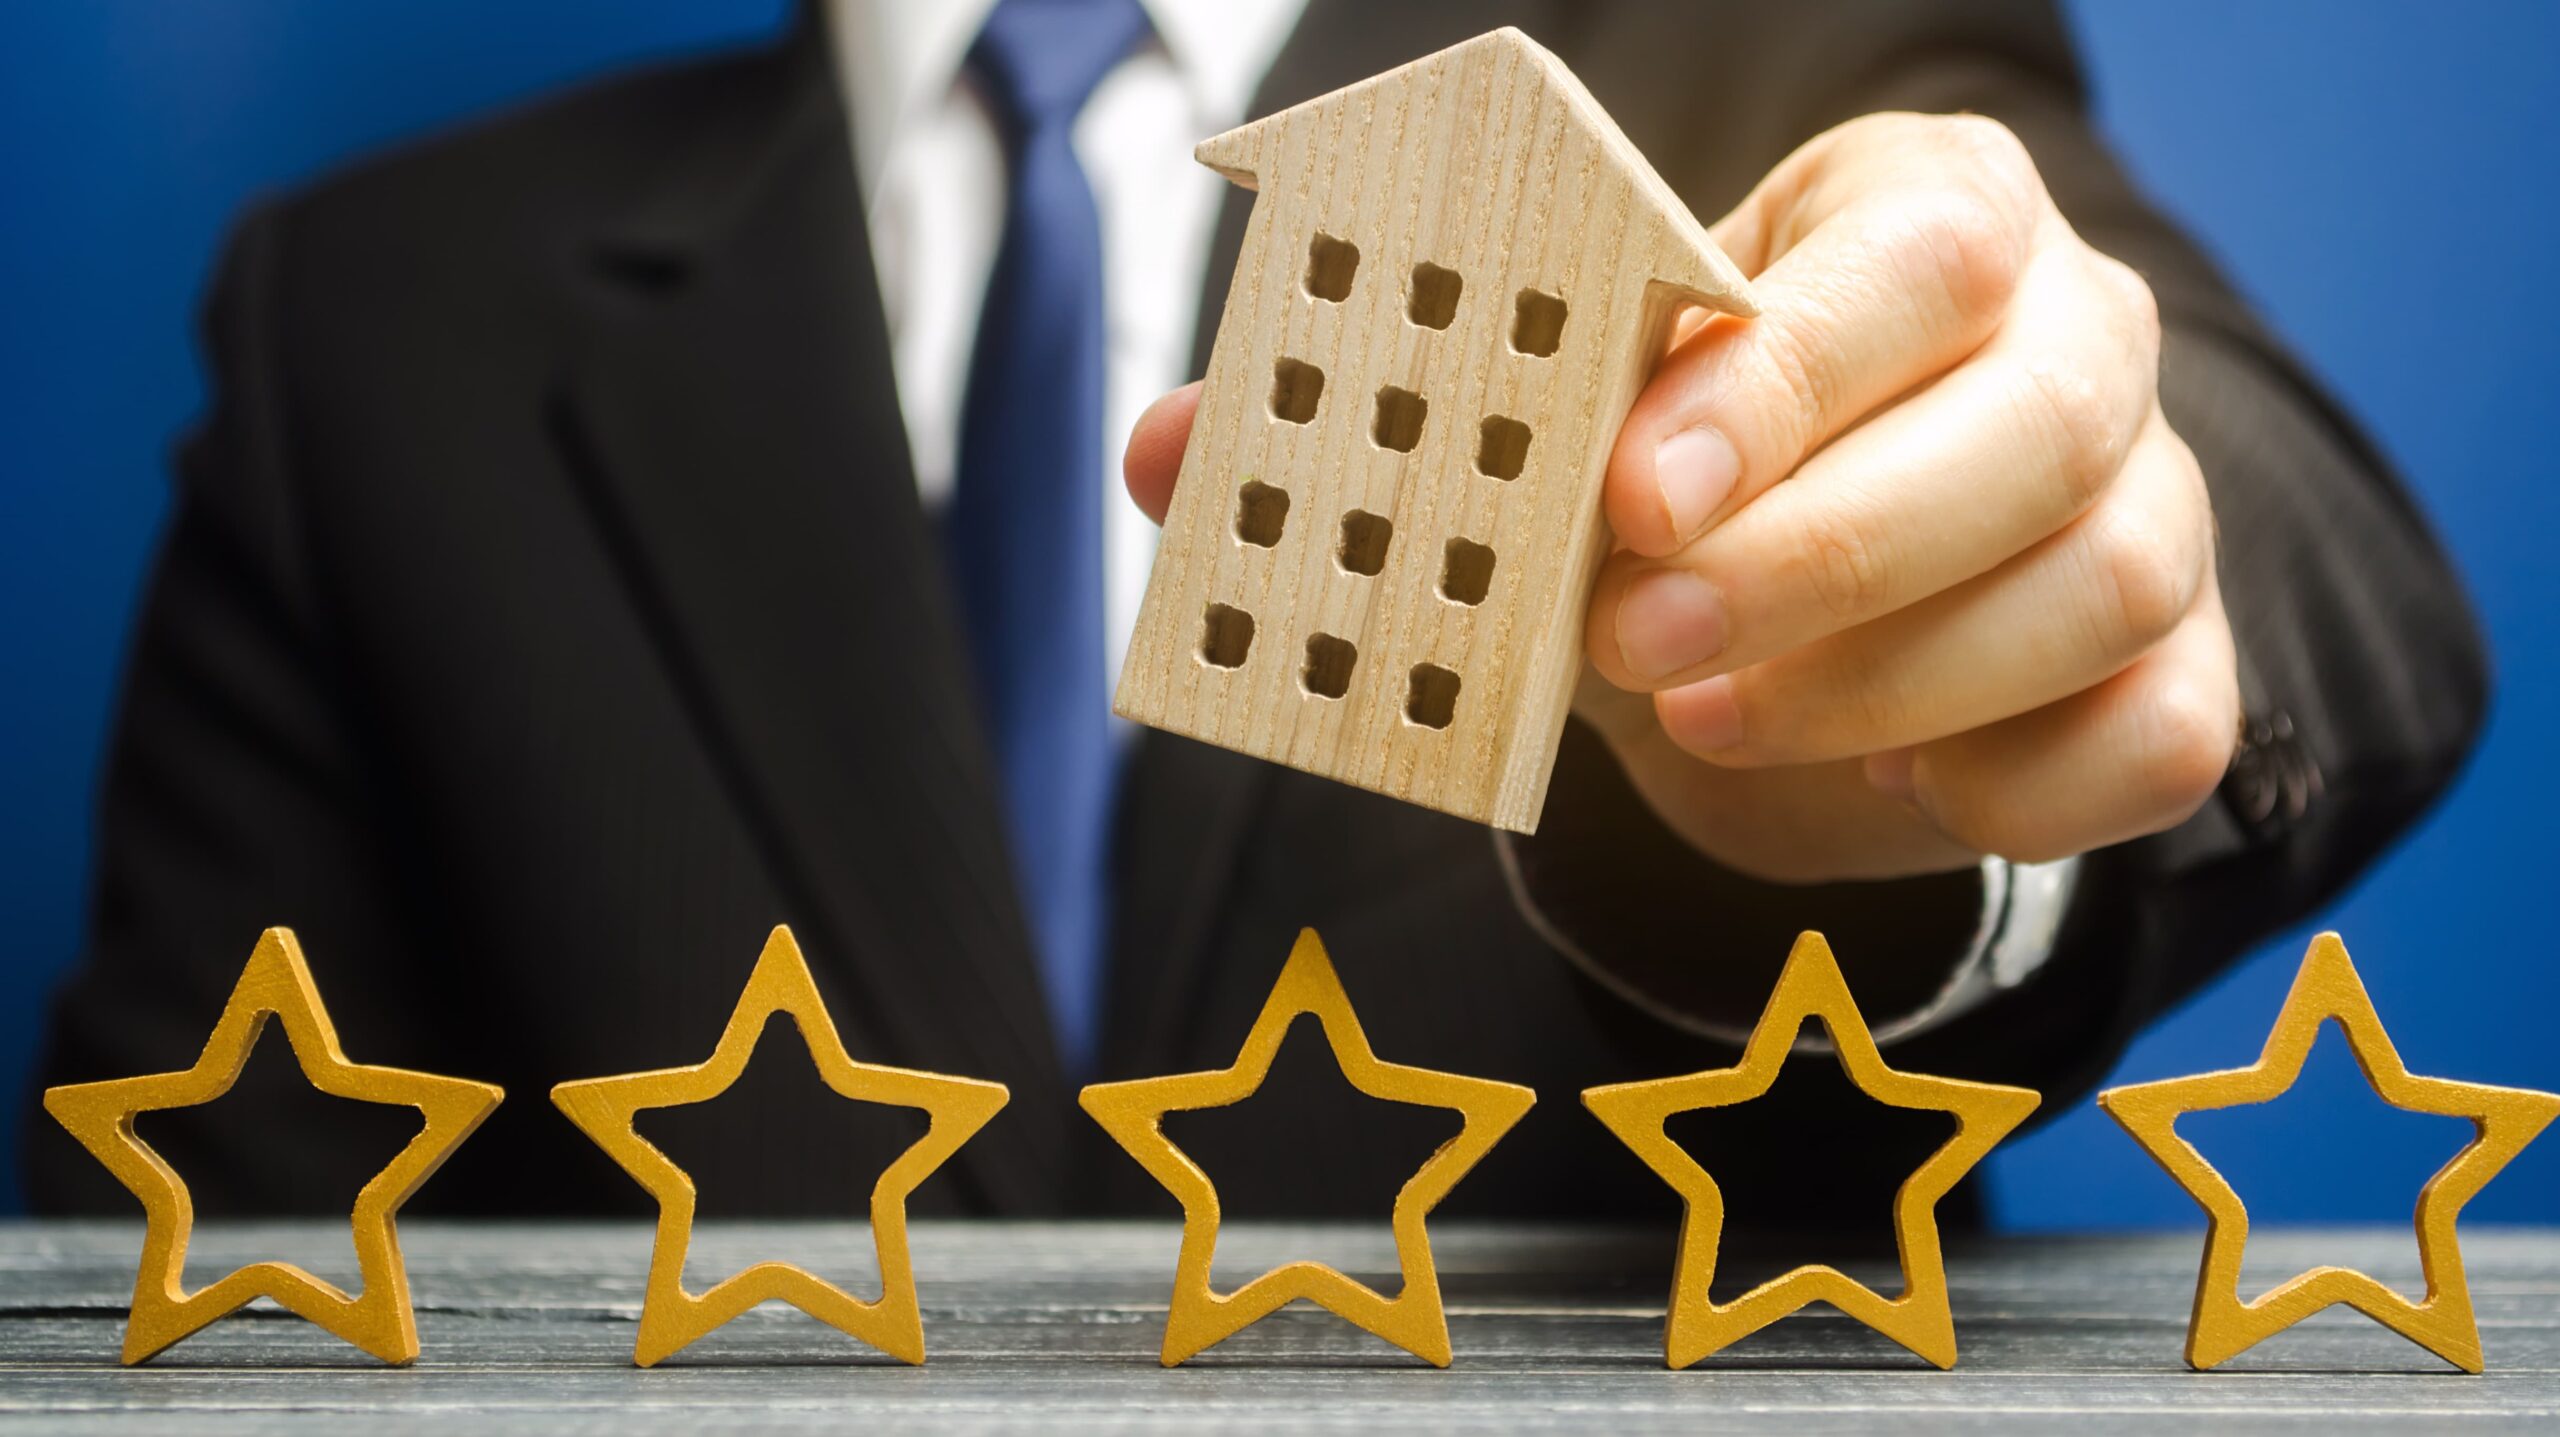 Ein Geschäftsmann hält ein Hotelsymbol über fünf Sternen in der Hand, um auf die positiven Bewertungen und hohe Kundenzufriedenheit seines Hotels hinzuweisen. Ein dauerhaftes und Marketing